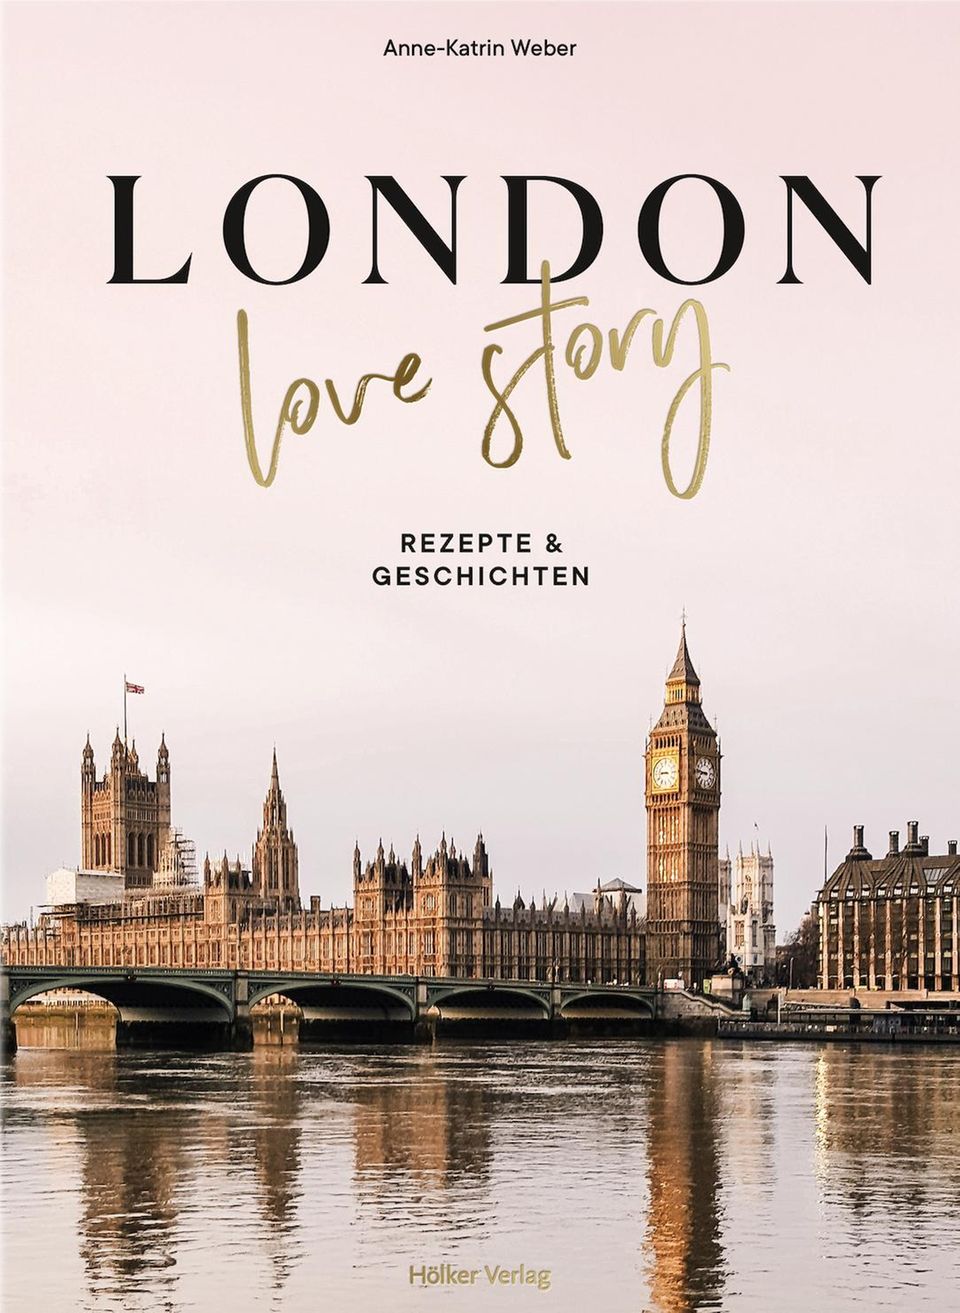 Klassiker der britischen Küche: Buch "London Love Story"